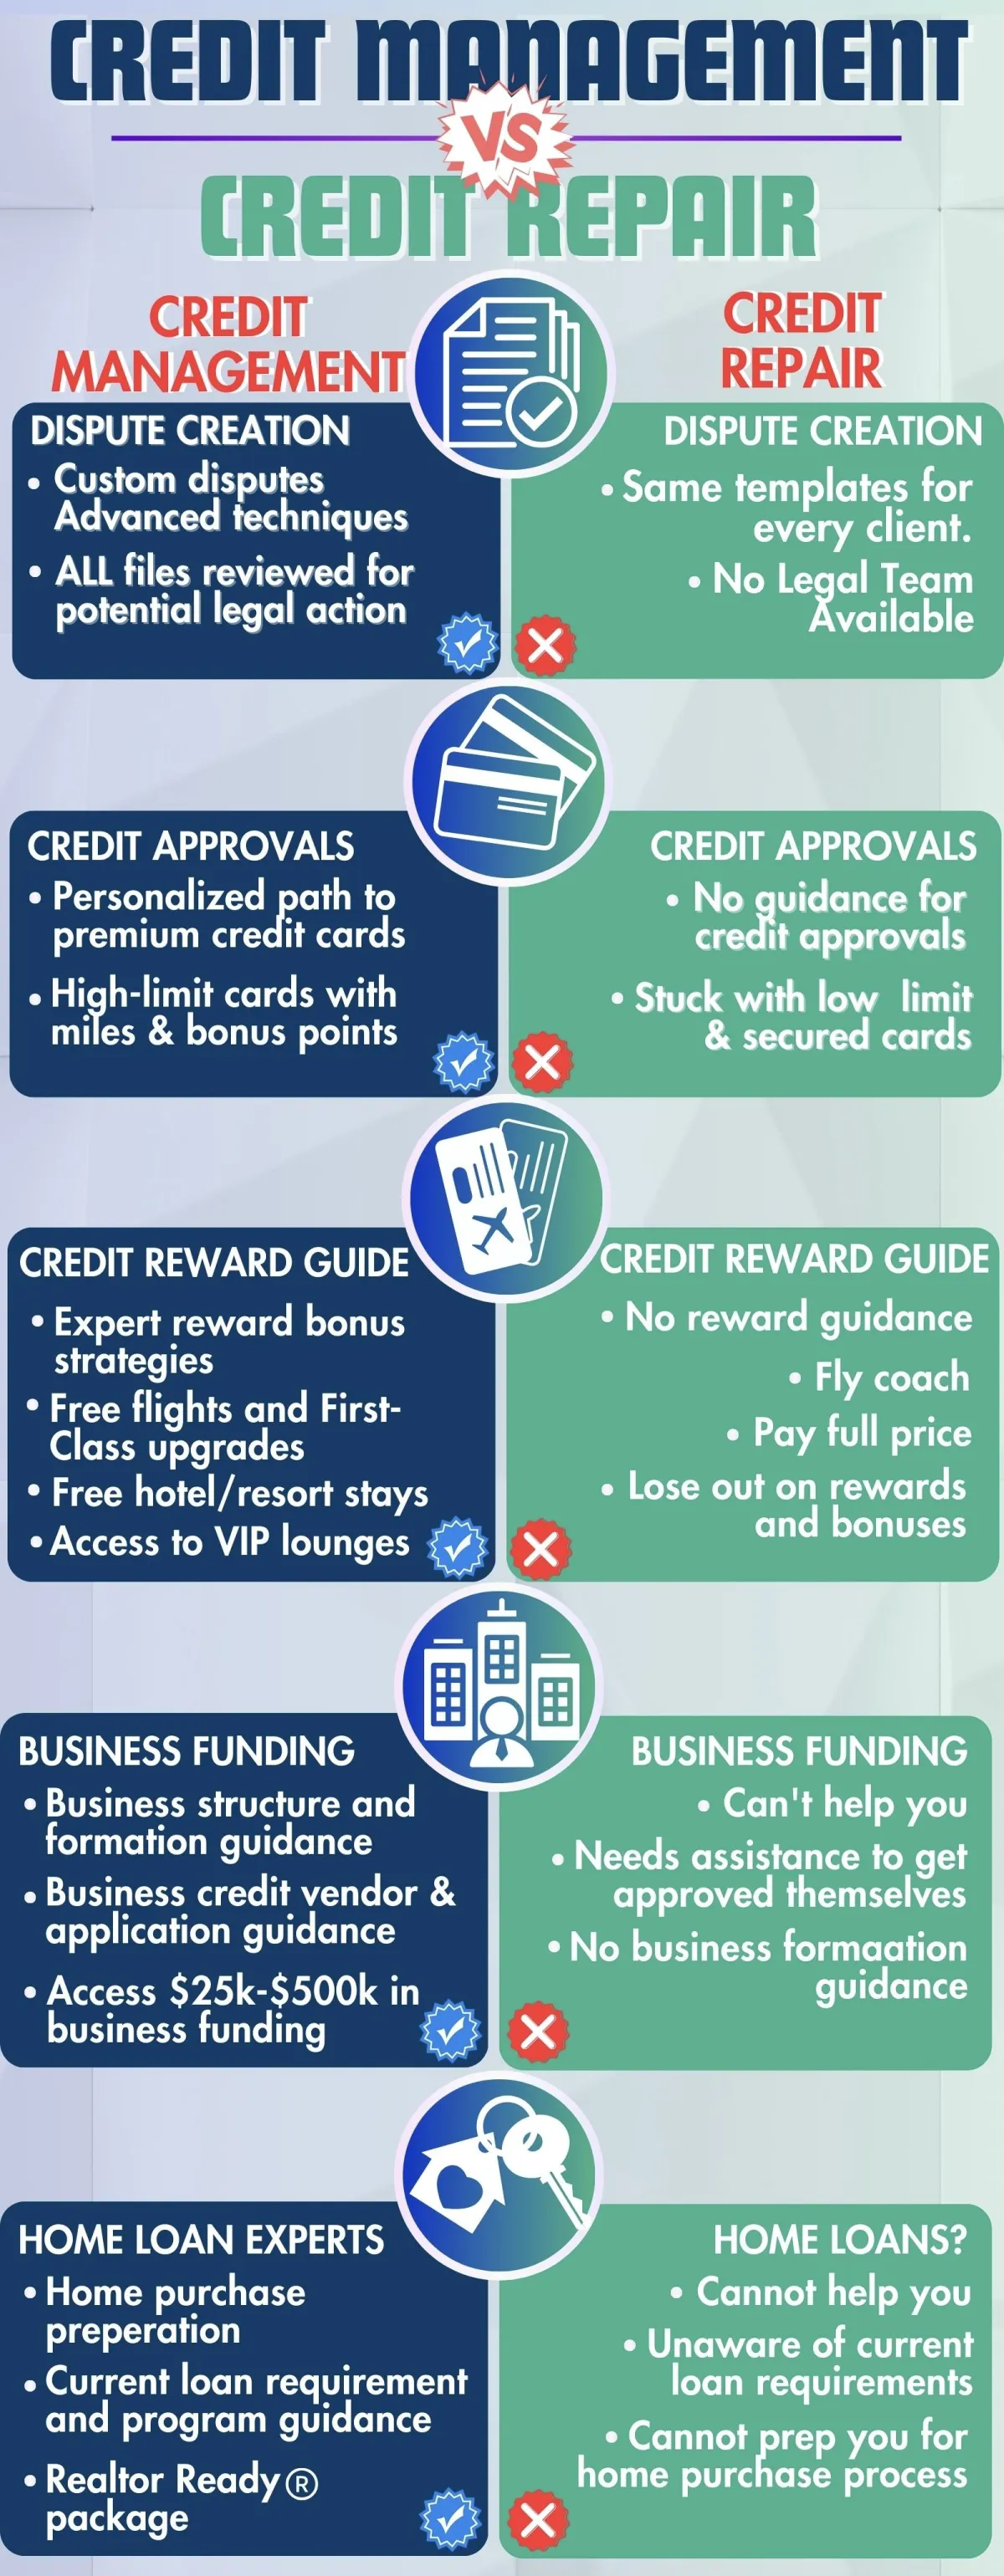 Credit management vs credit repair infographic